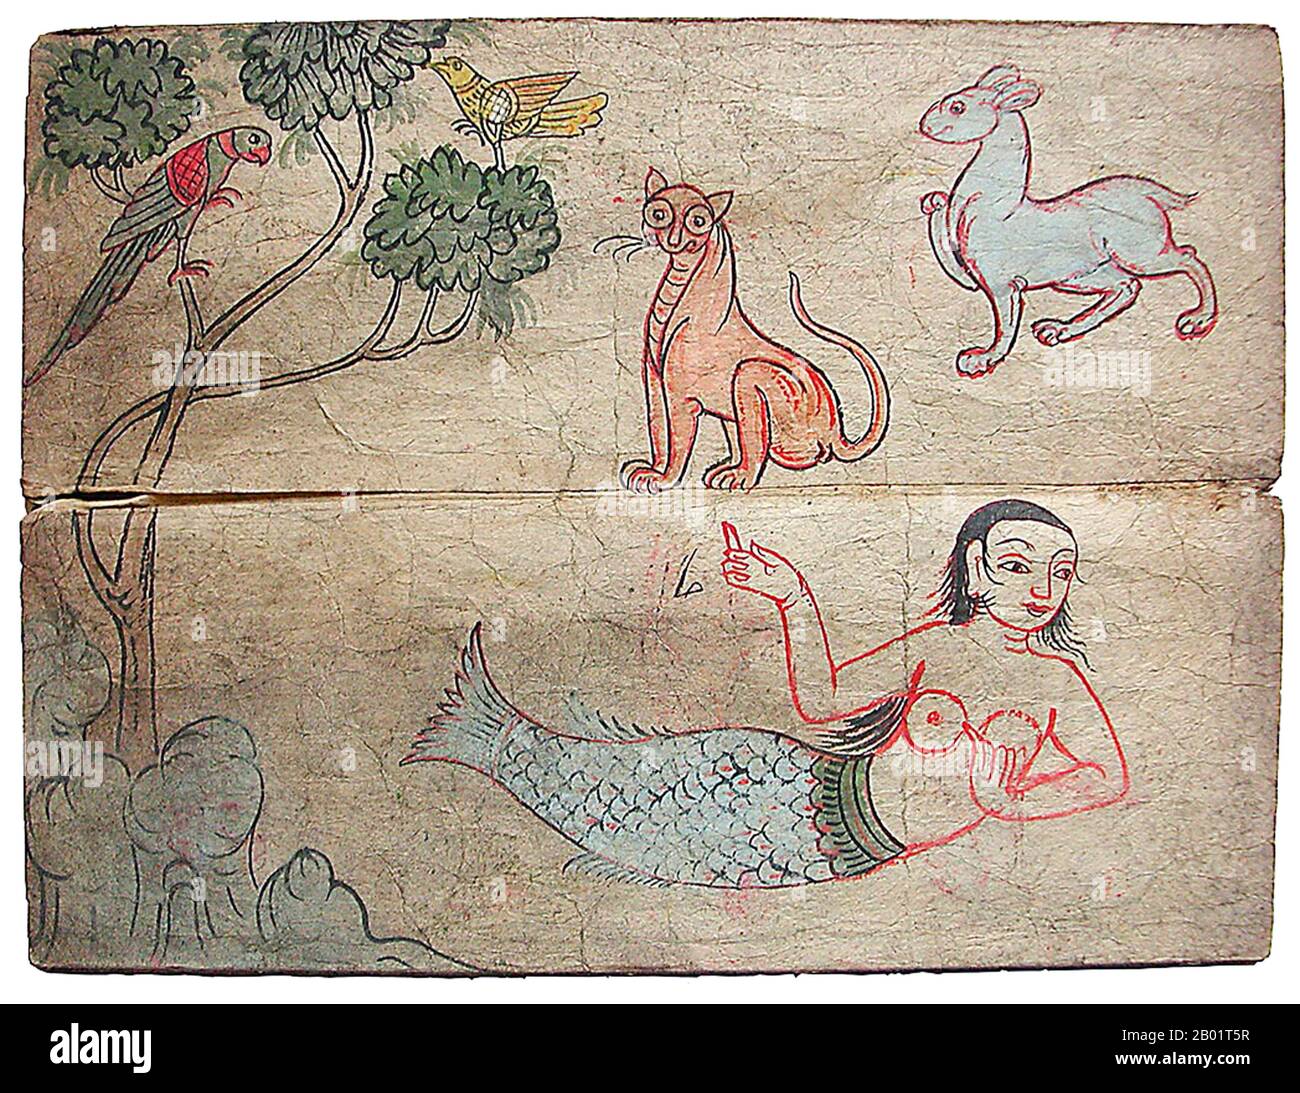 Birmania/Myanmar: Pittura di una sirena e di altre creature, alcune mitiche, del XVIII secolo. Questo foglio proviene da un libro di riferimento di dipinti probabilmente progettato come guida per i pittori murali dei templi. Foto Stock